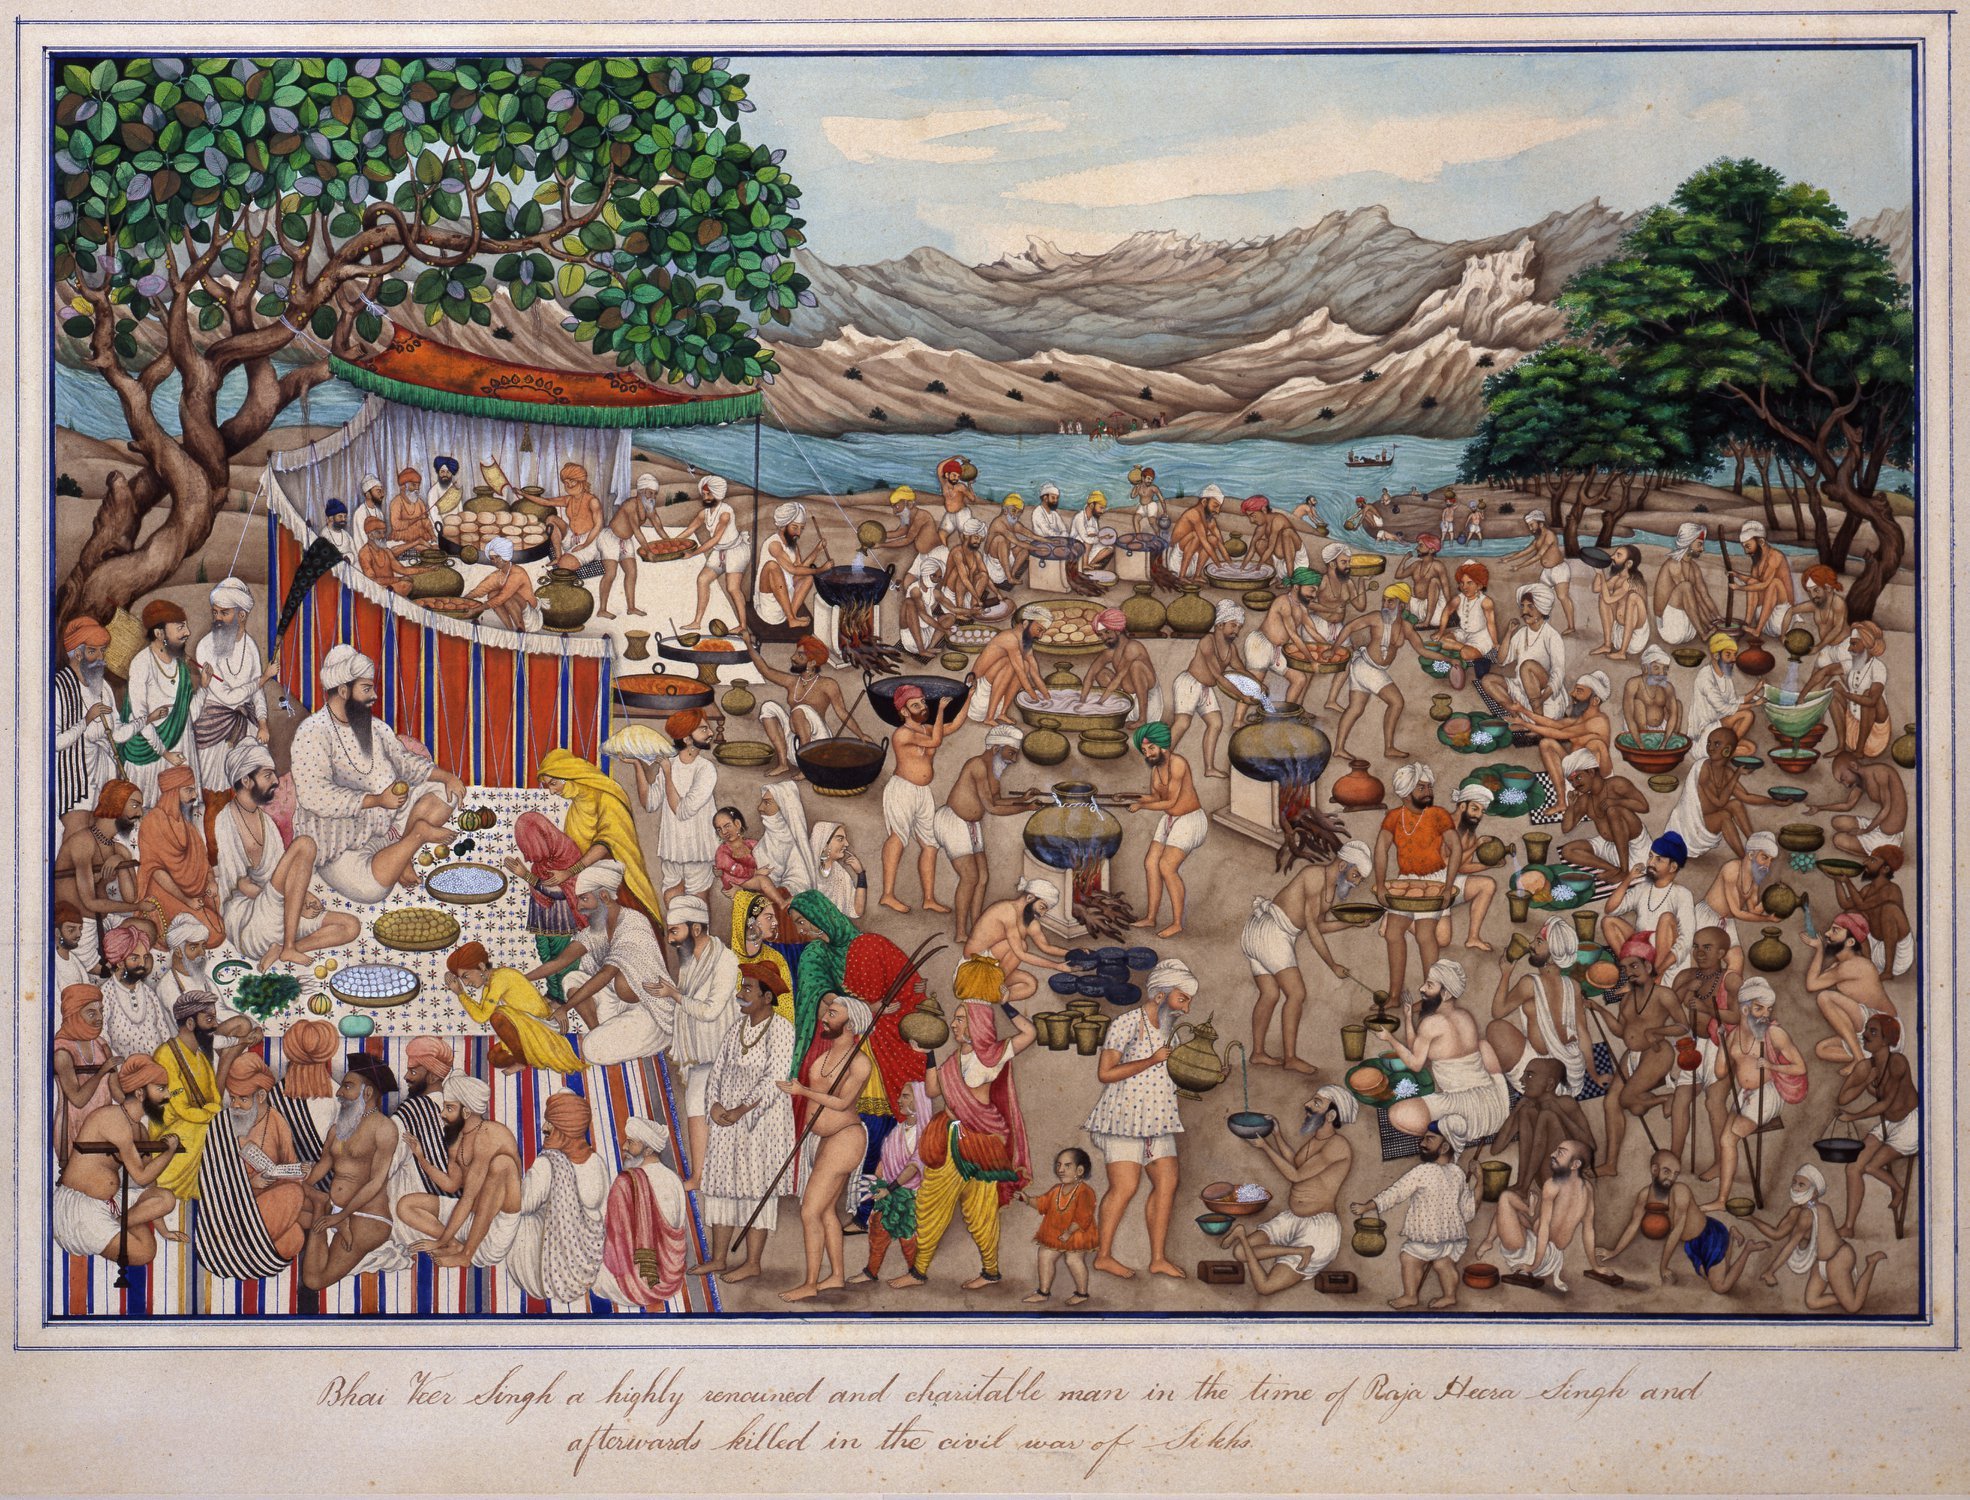 The_Camp_of_Bhai_Bir_Singh_Naurangabad,_Punjab,_ca.1850.jpg